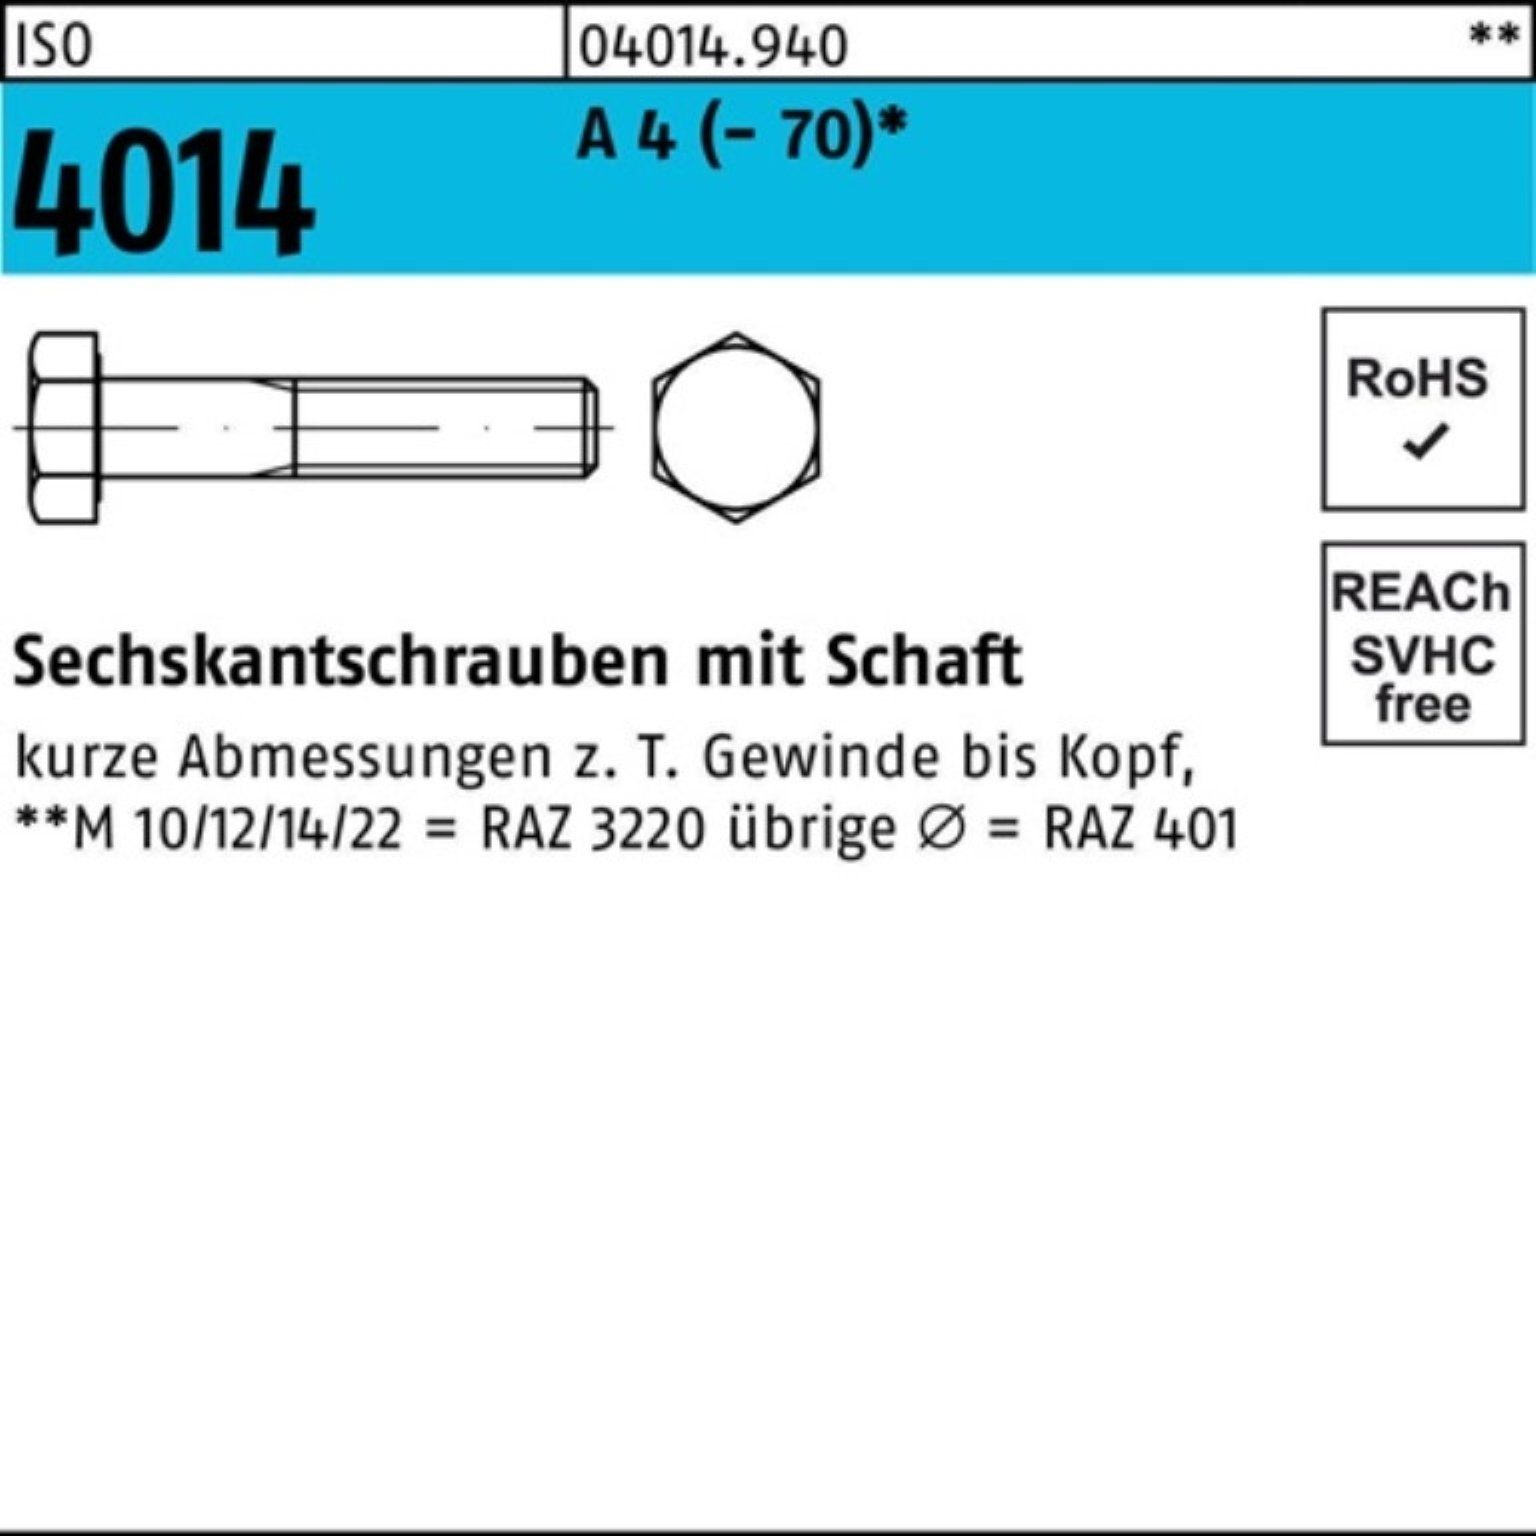 A 4 Sechskantschraube 190 ISO ISO Pack Schaft 1 Stück Sechskantschraube Bufab M36x 4014 100er